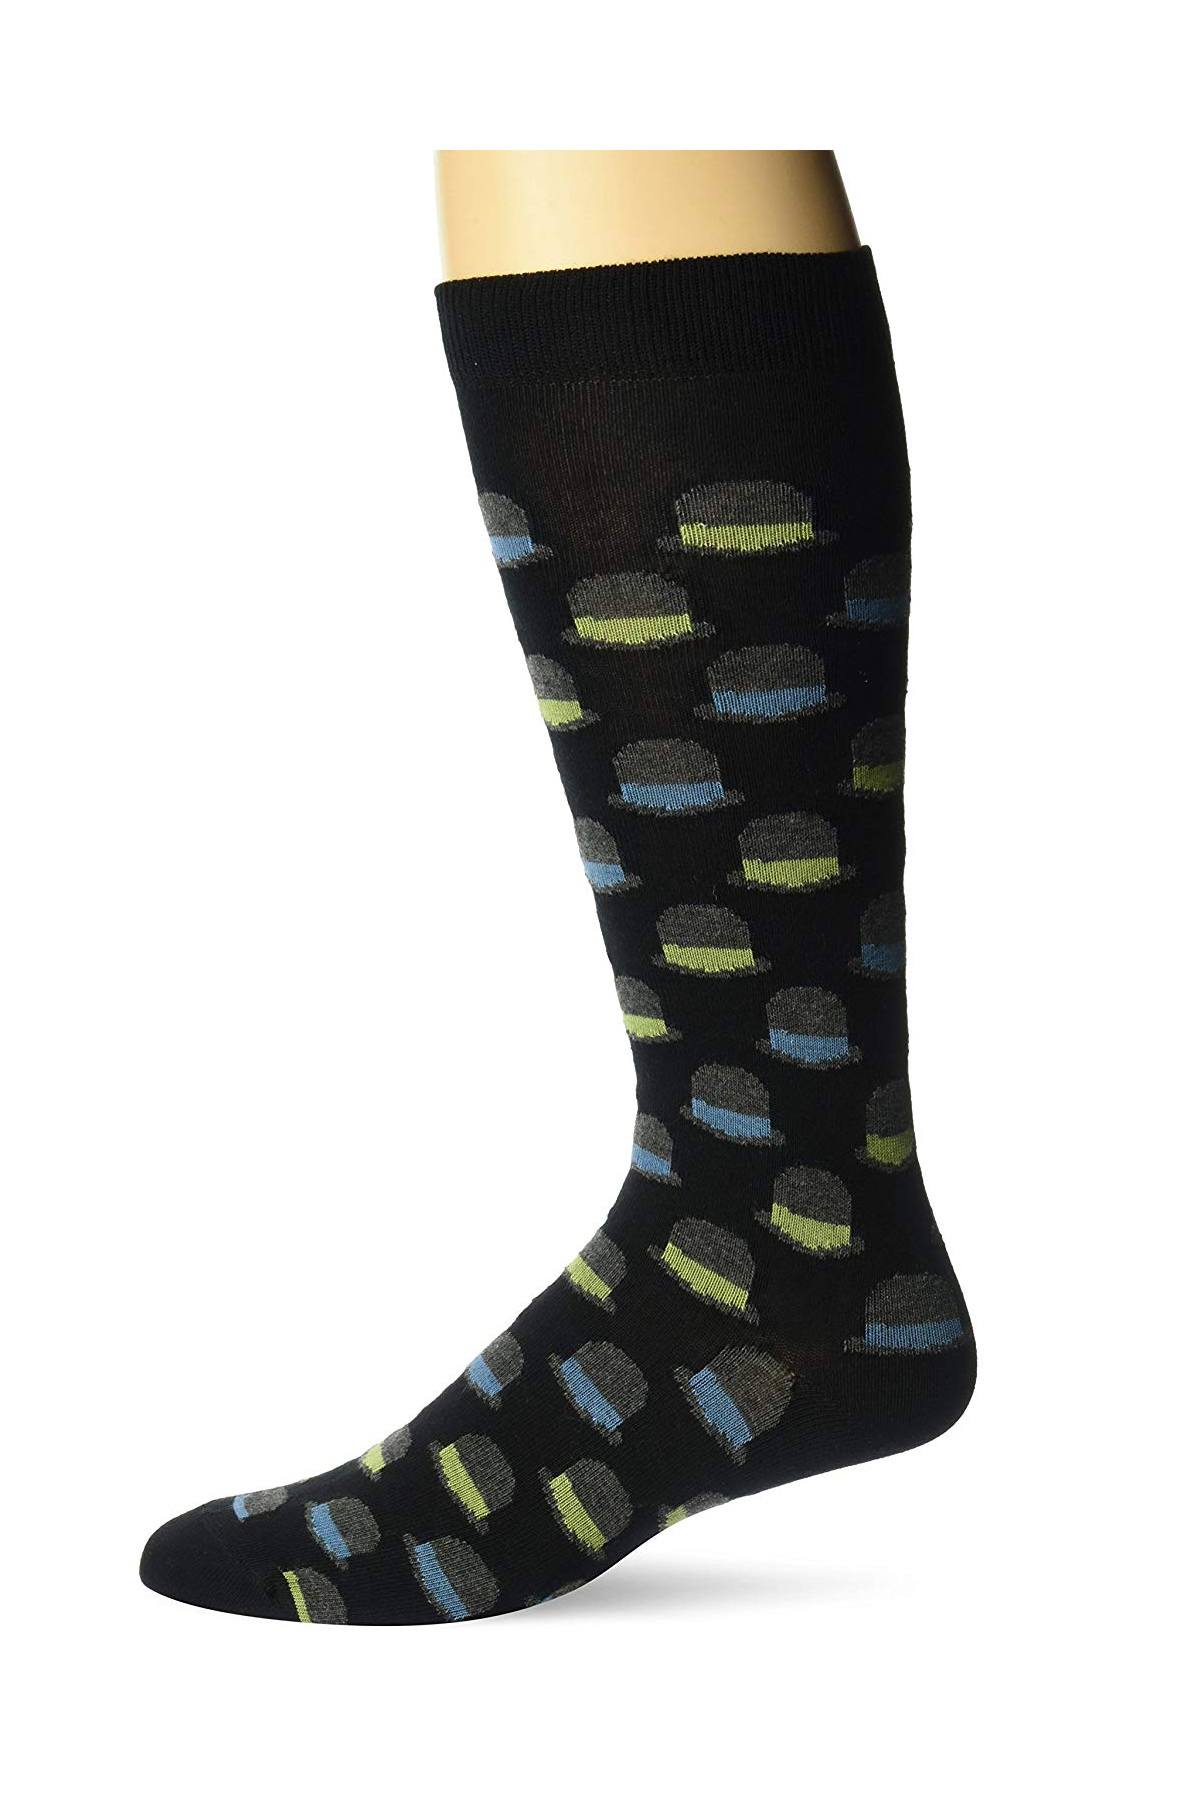 Ozone Black Magritte Calf Sock